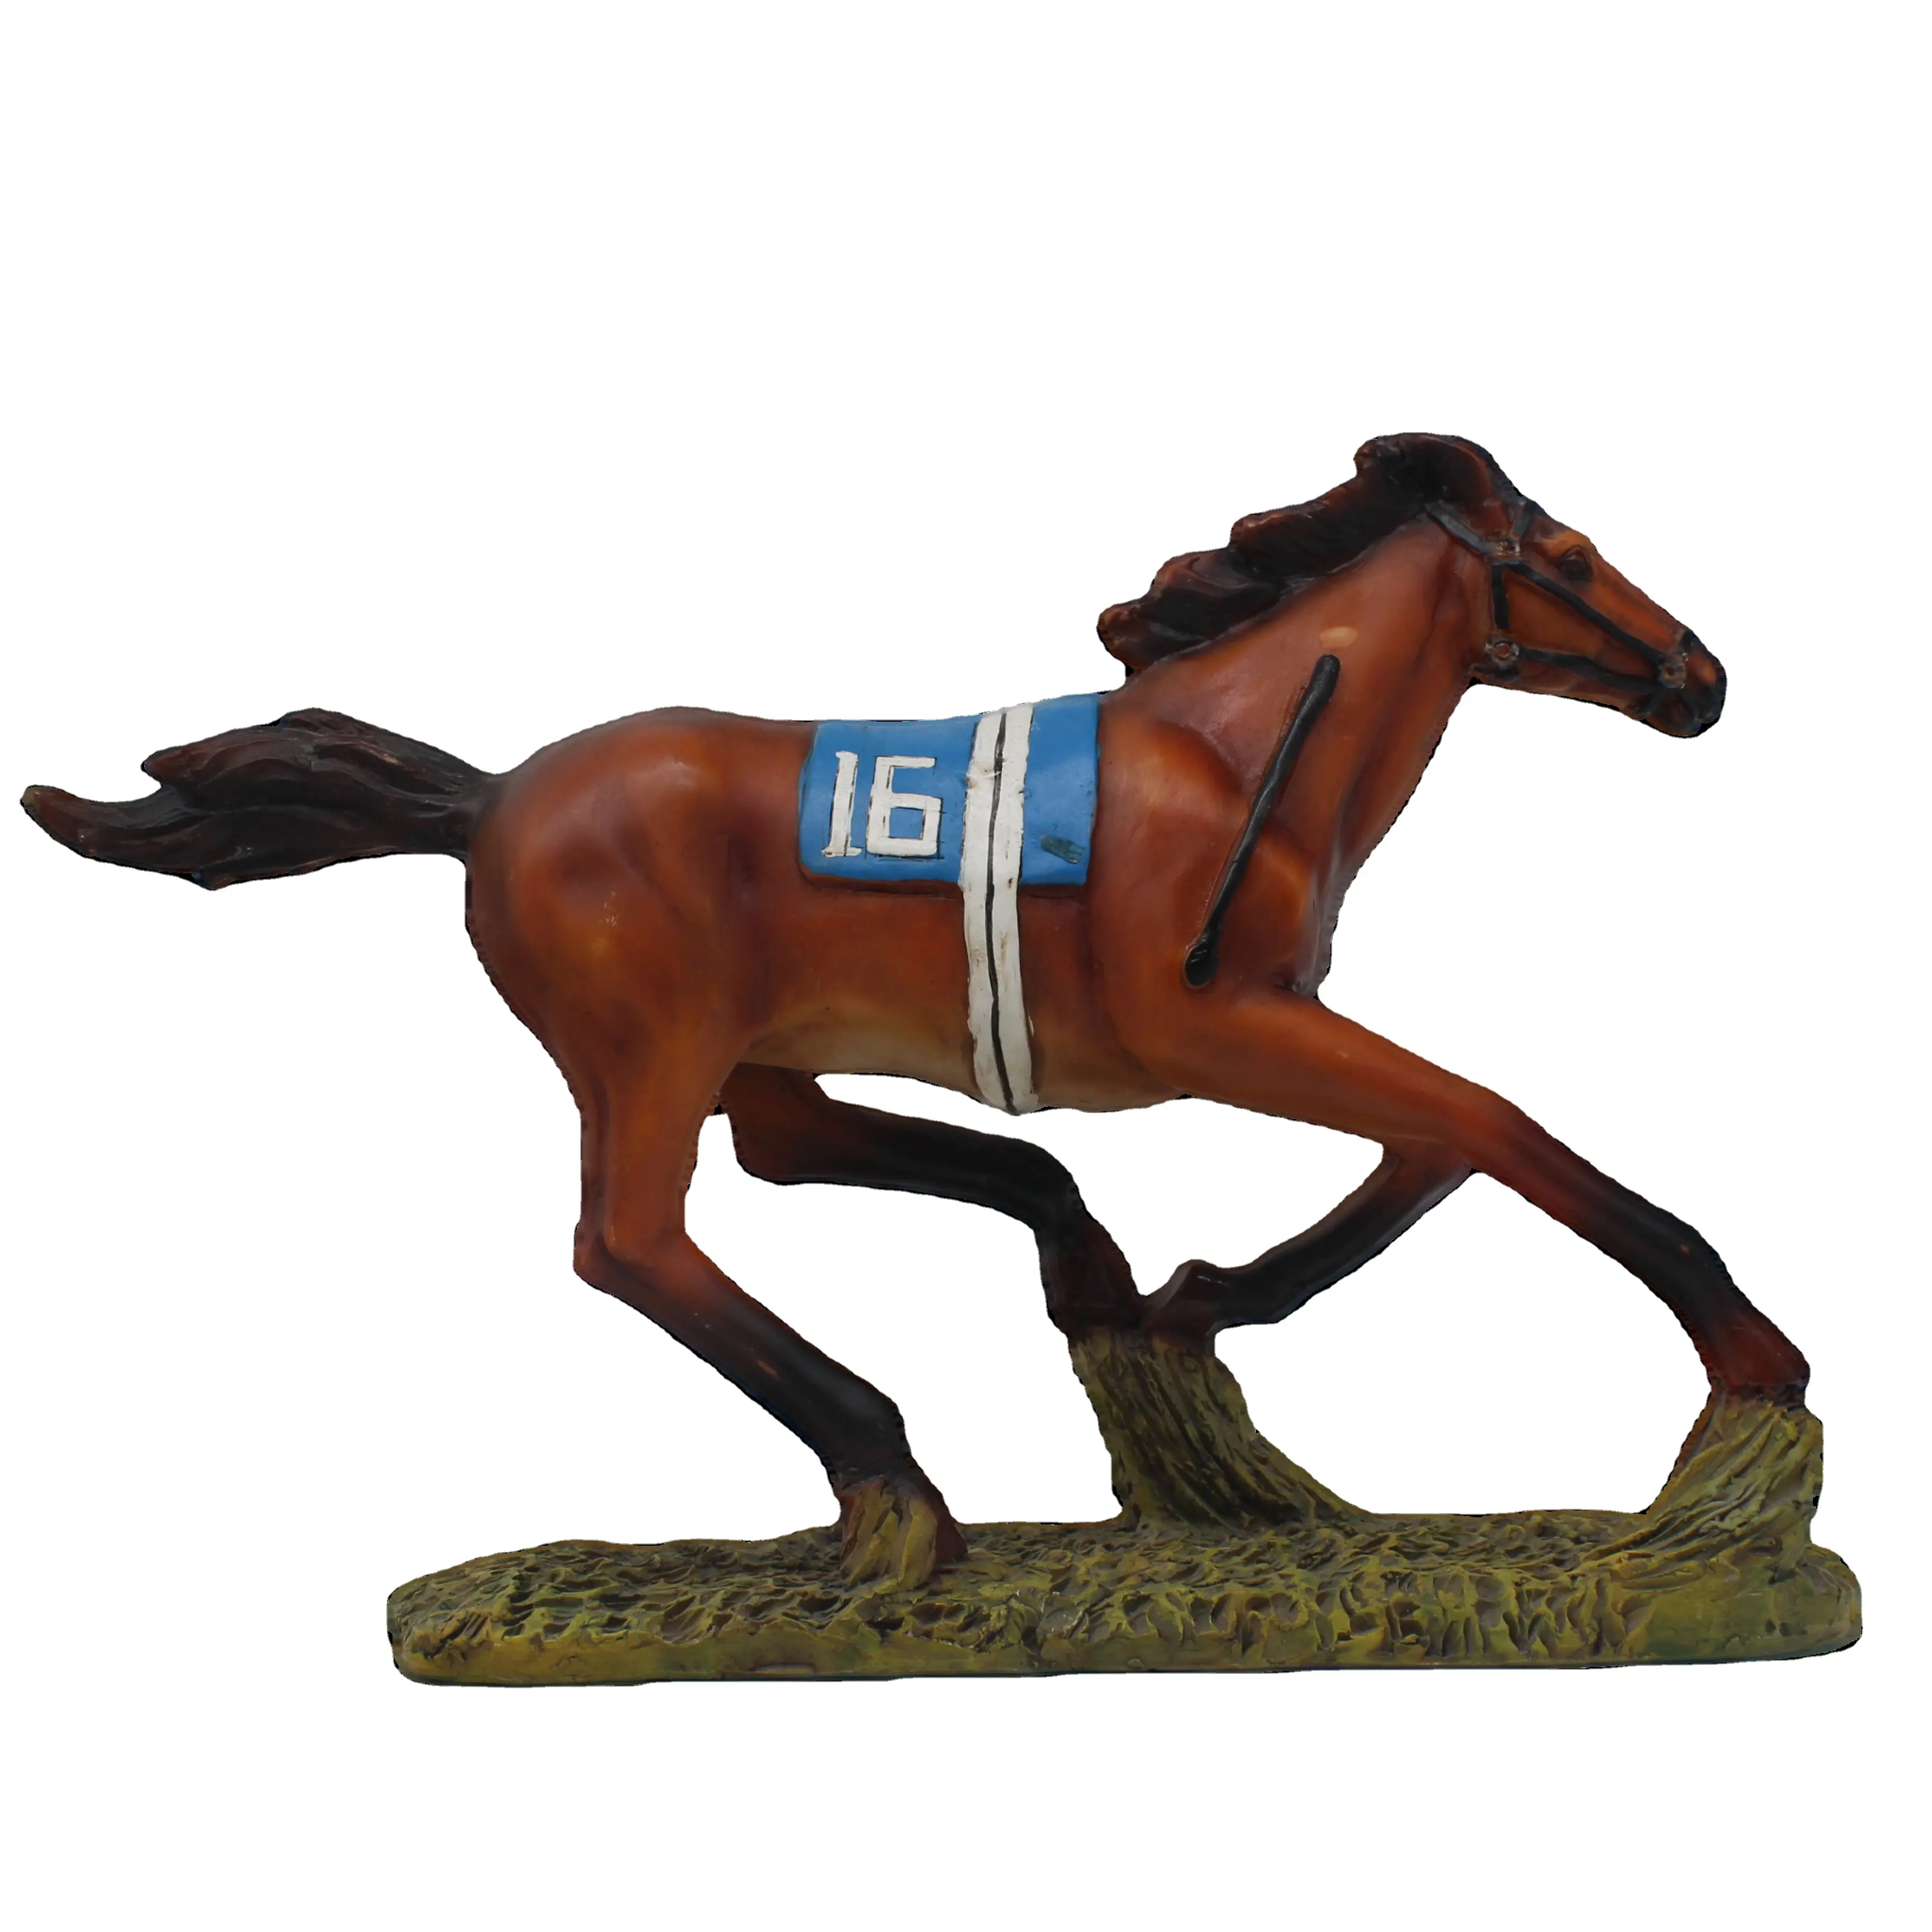 Horserace-figurita de resina para manualidades, excelente detalle y artesanía, gran coleccionable, decoración de escritorio para el hogar y recuerdos de fiesta